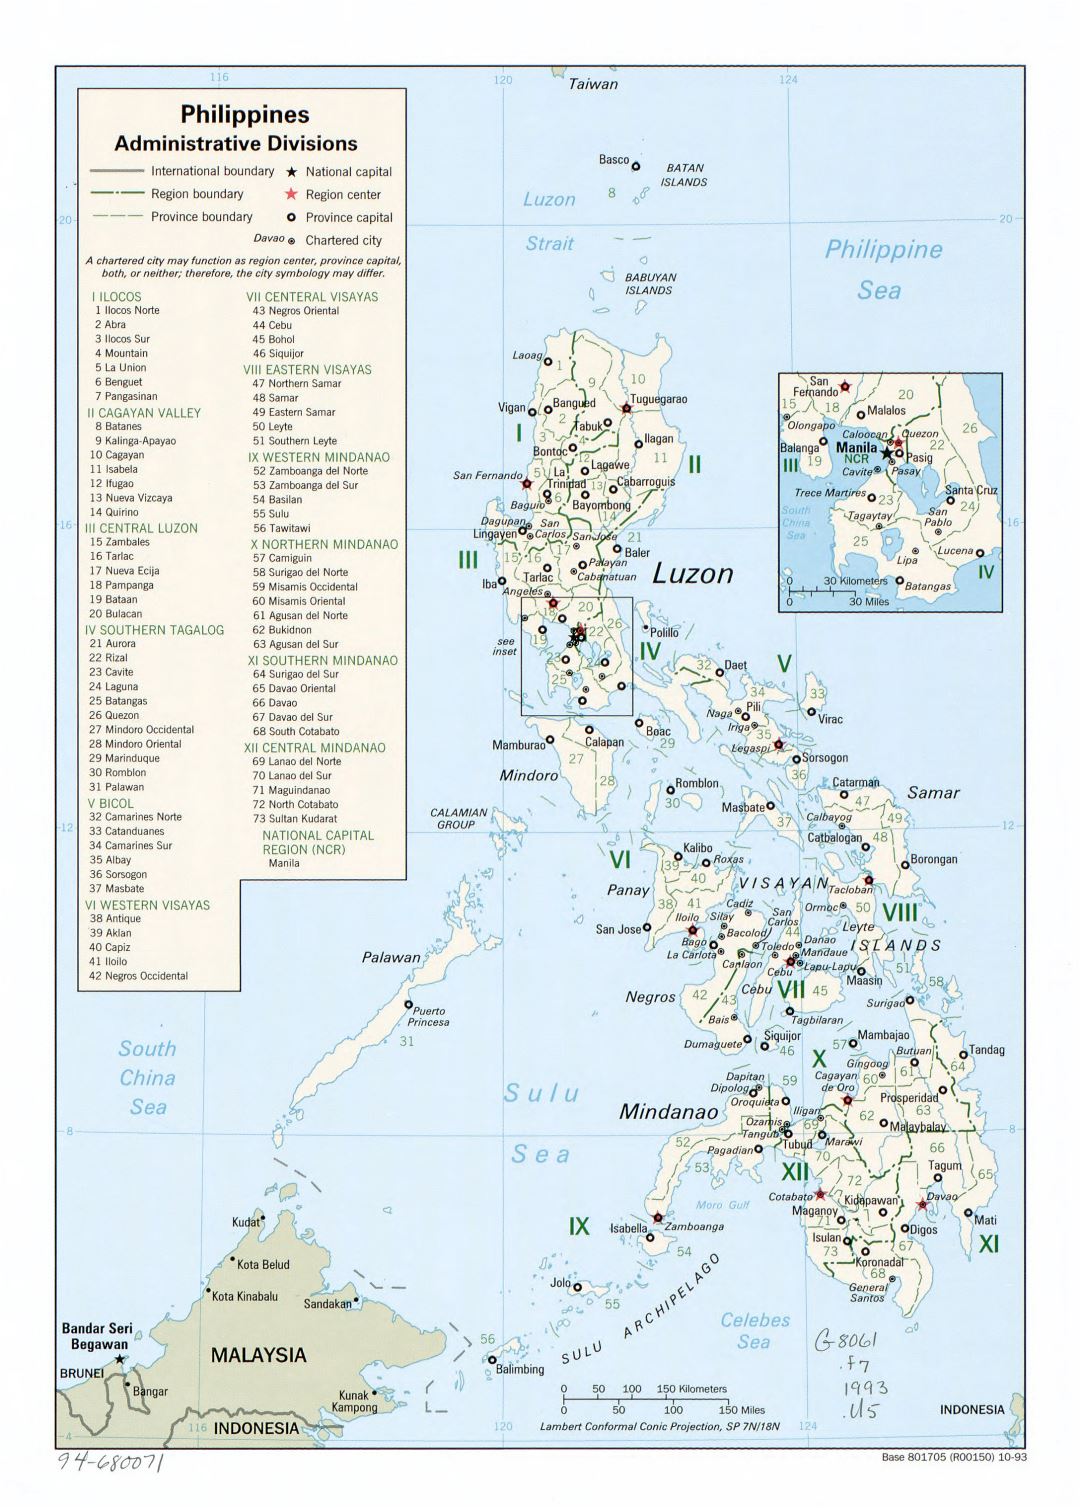 Grande detallado mapa de administrativas divisiones de Filipinas - 1993